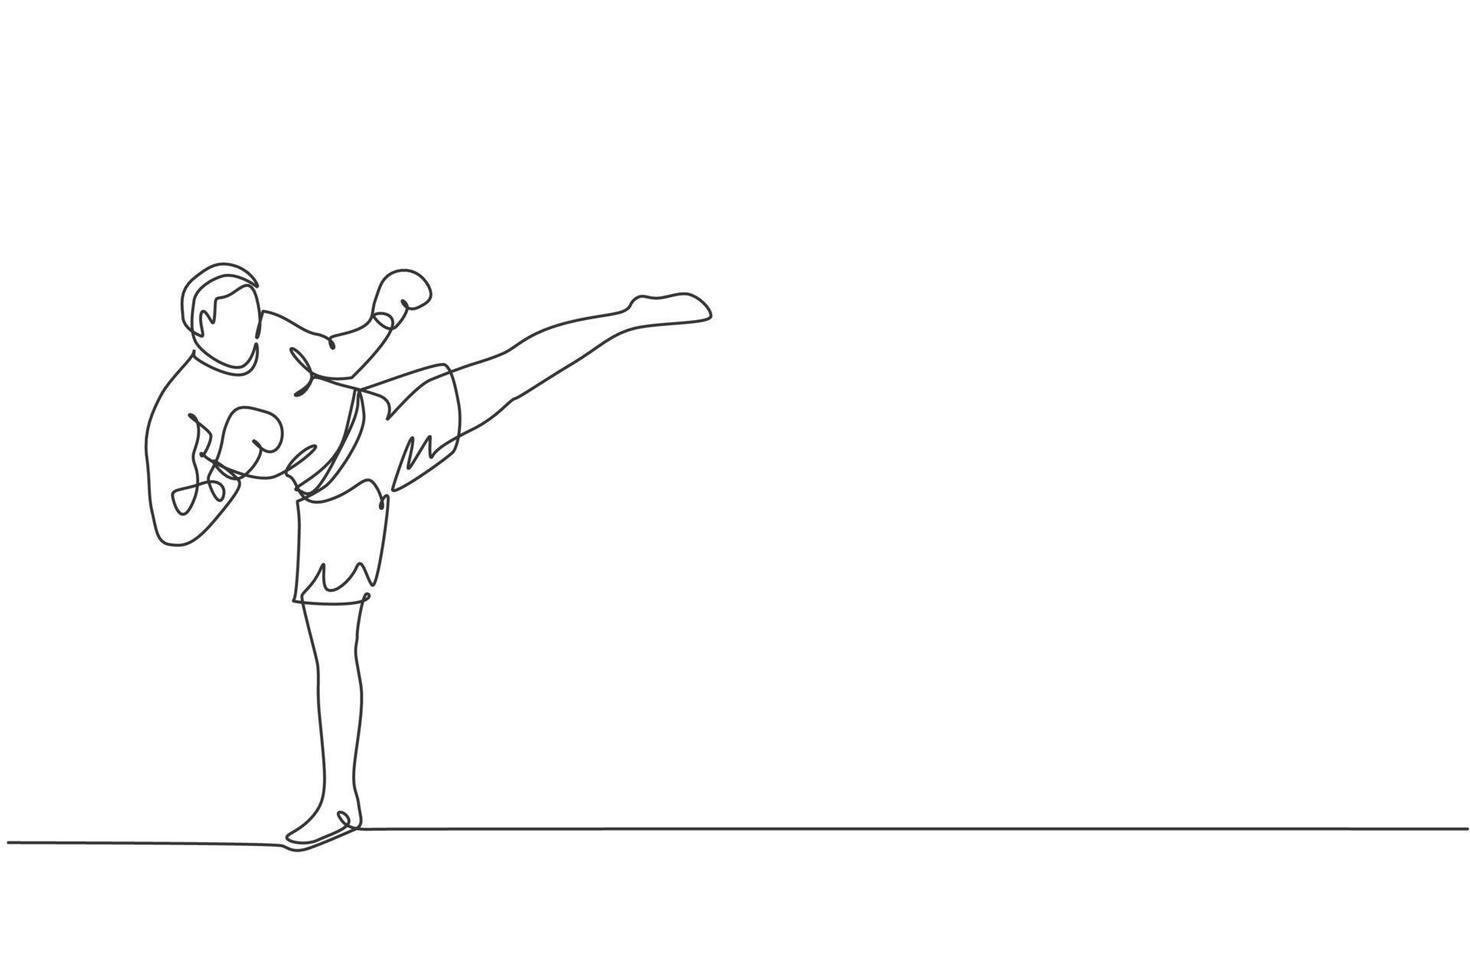 un dibujo de línea continua de un joven deportista kickboxer entrenando una poderosa postura de patada en el centro de gimnasio. concepto de deporte de kickboxing combativo. Ilustración de vector de diseño de dibujo de línea única dinámica